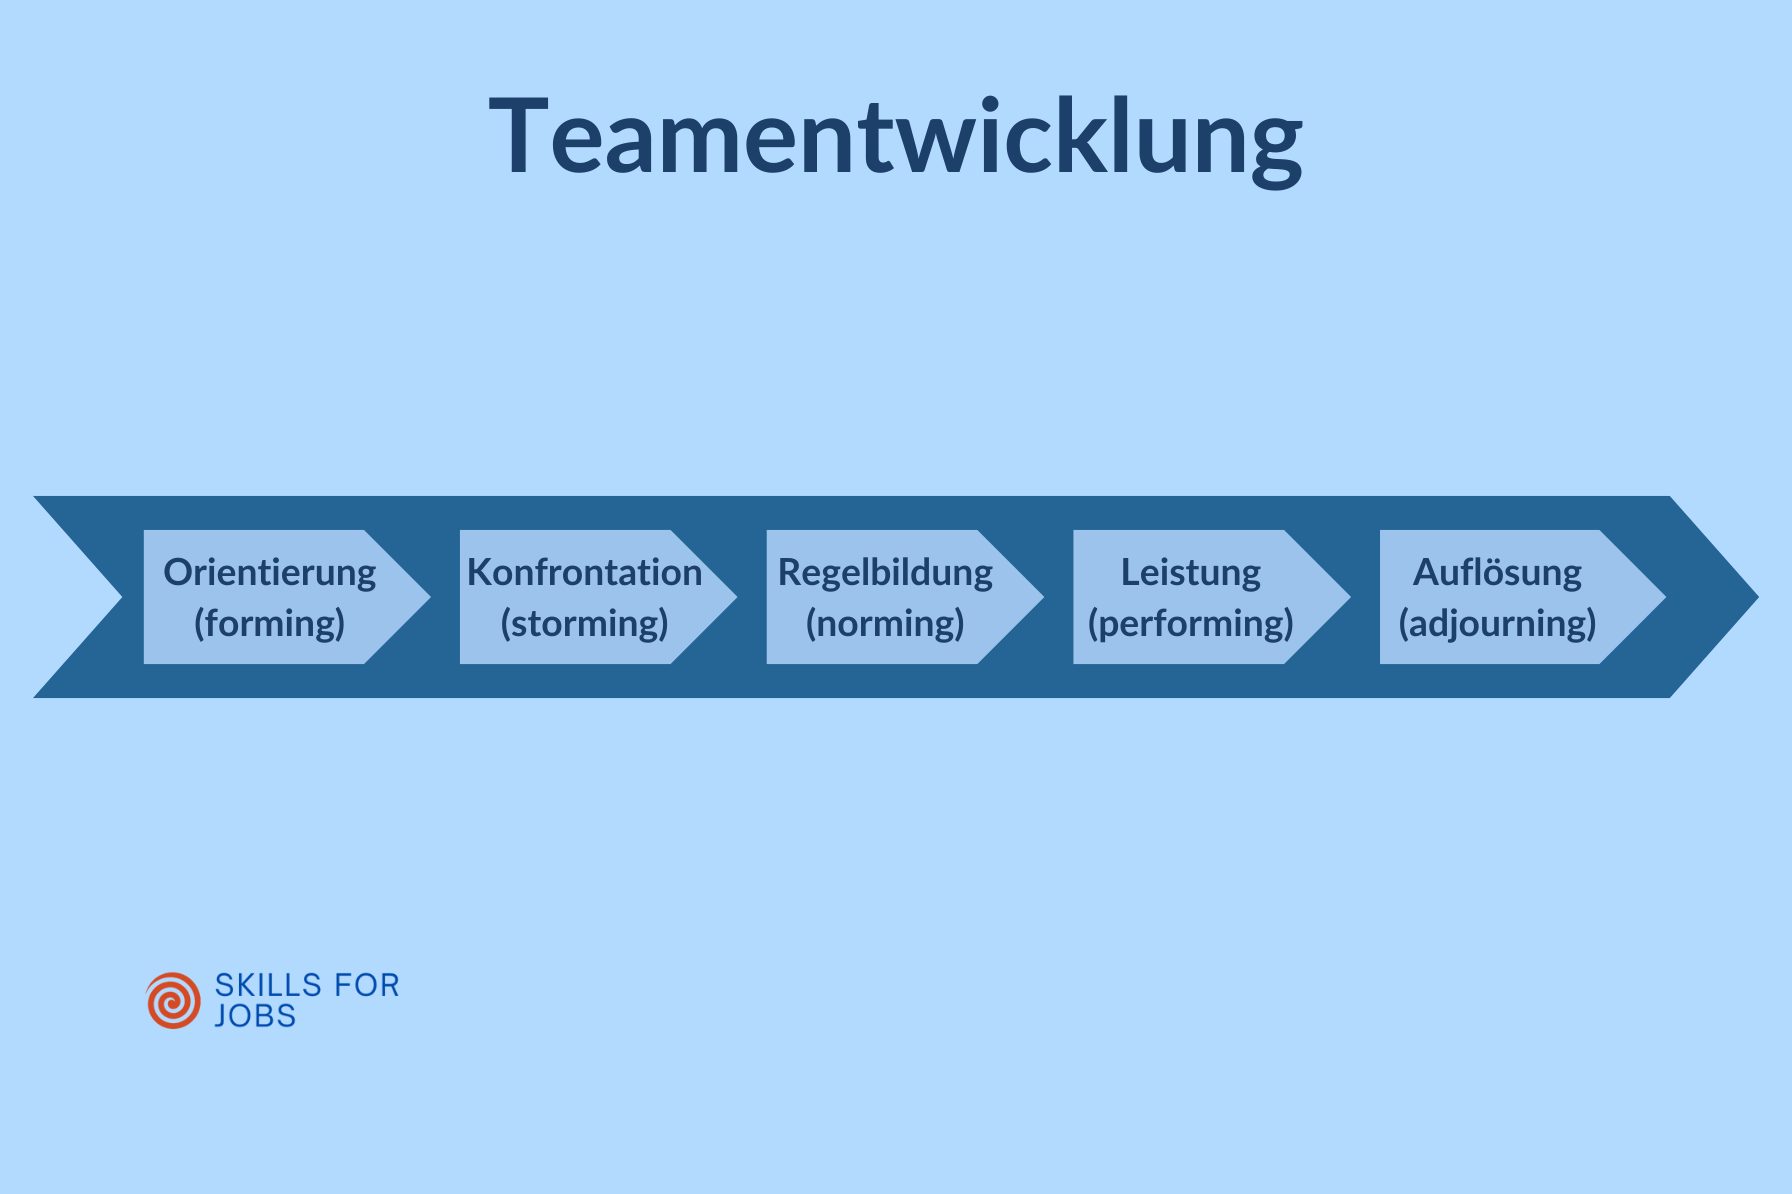 Teamentwicklung